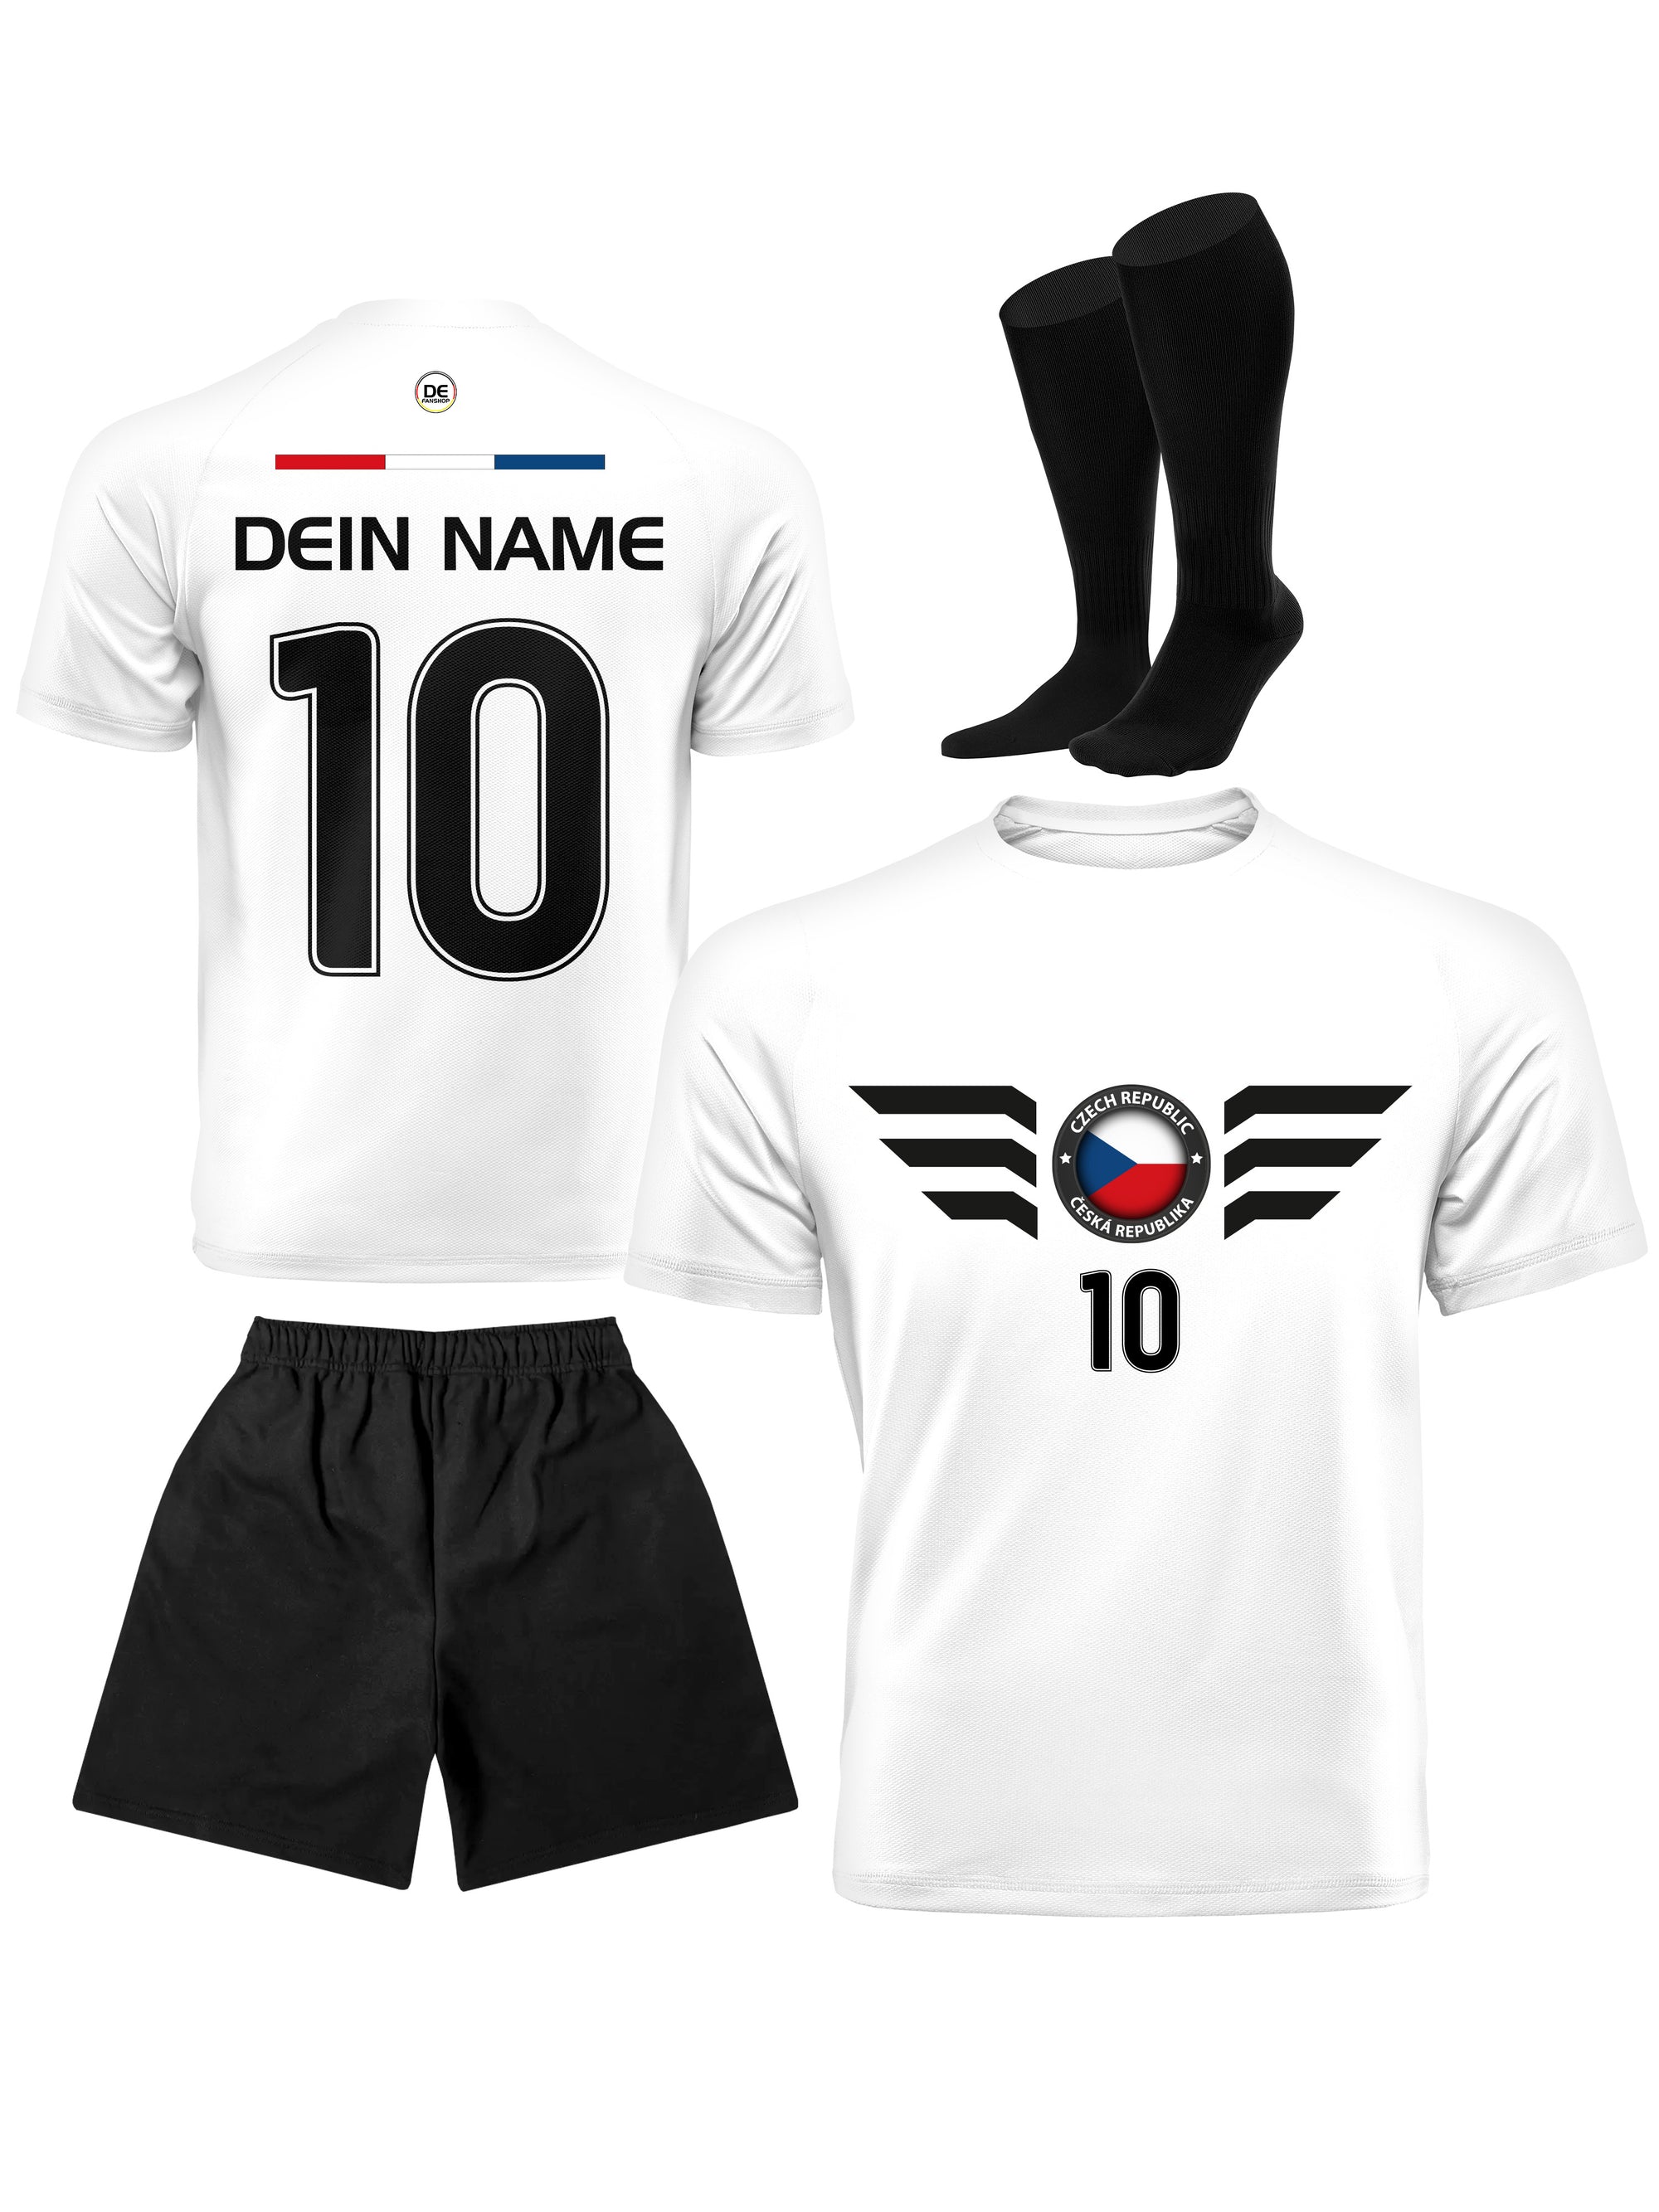 Die tschechische Republik Fußball Trikot mit Dein Name + Hose Stutzen